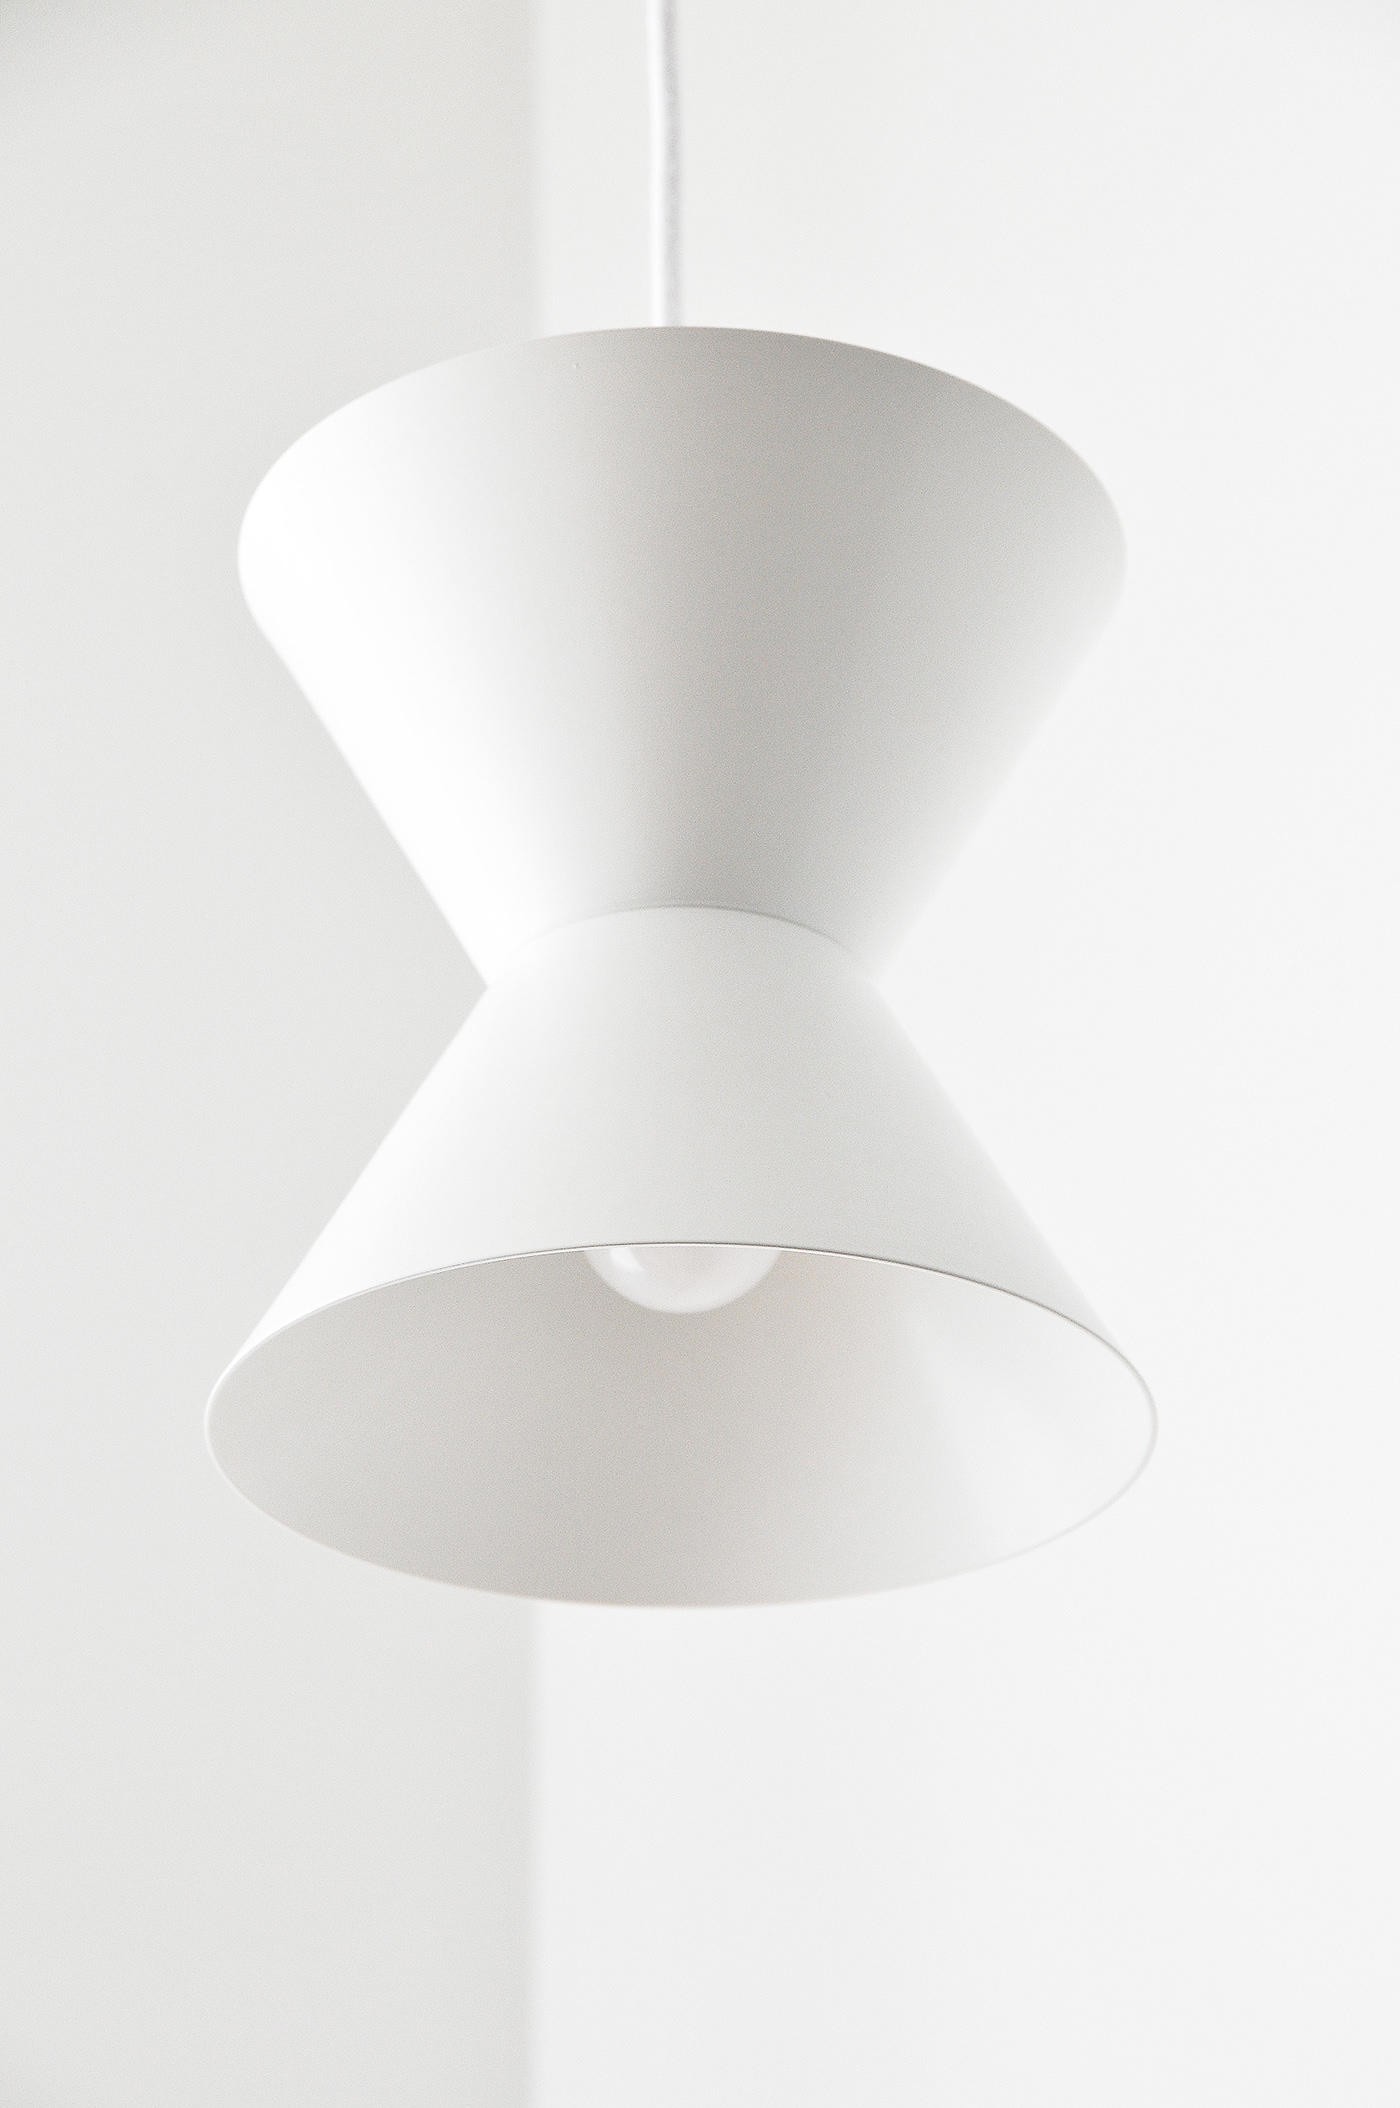 Ceiling lamp design Farol home interior design  interiors Lamp light lighting Lighting Design 